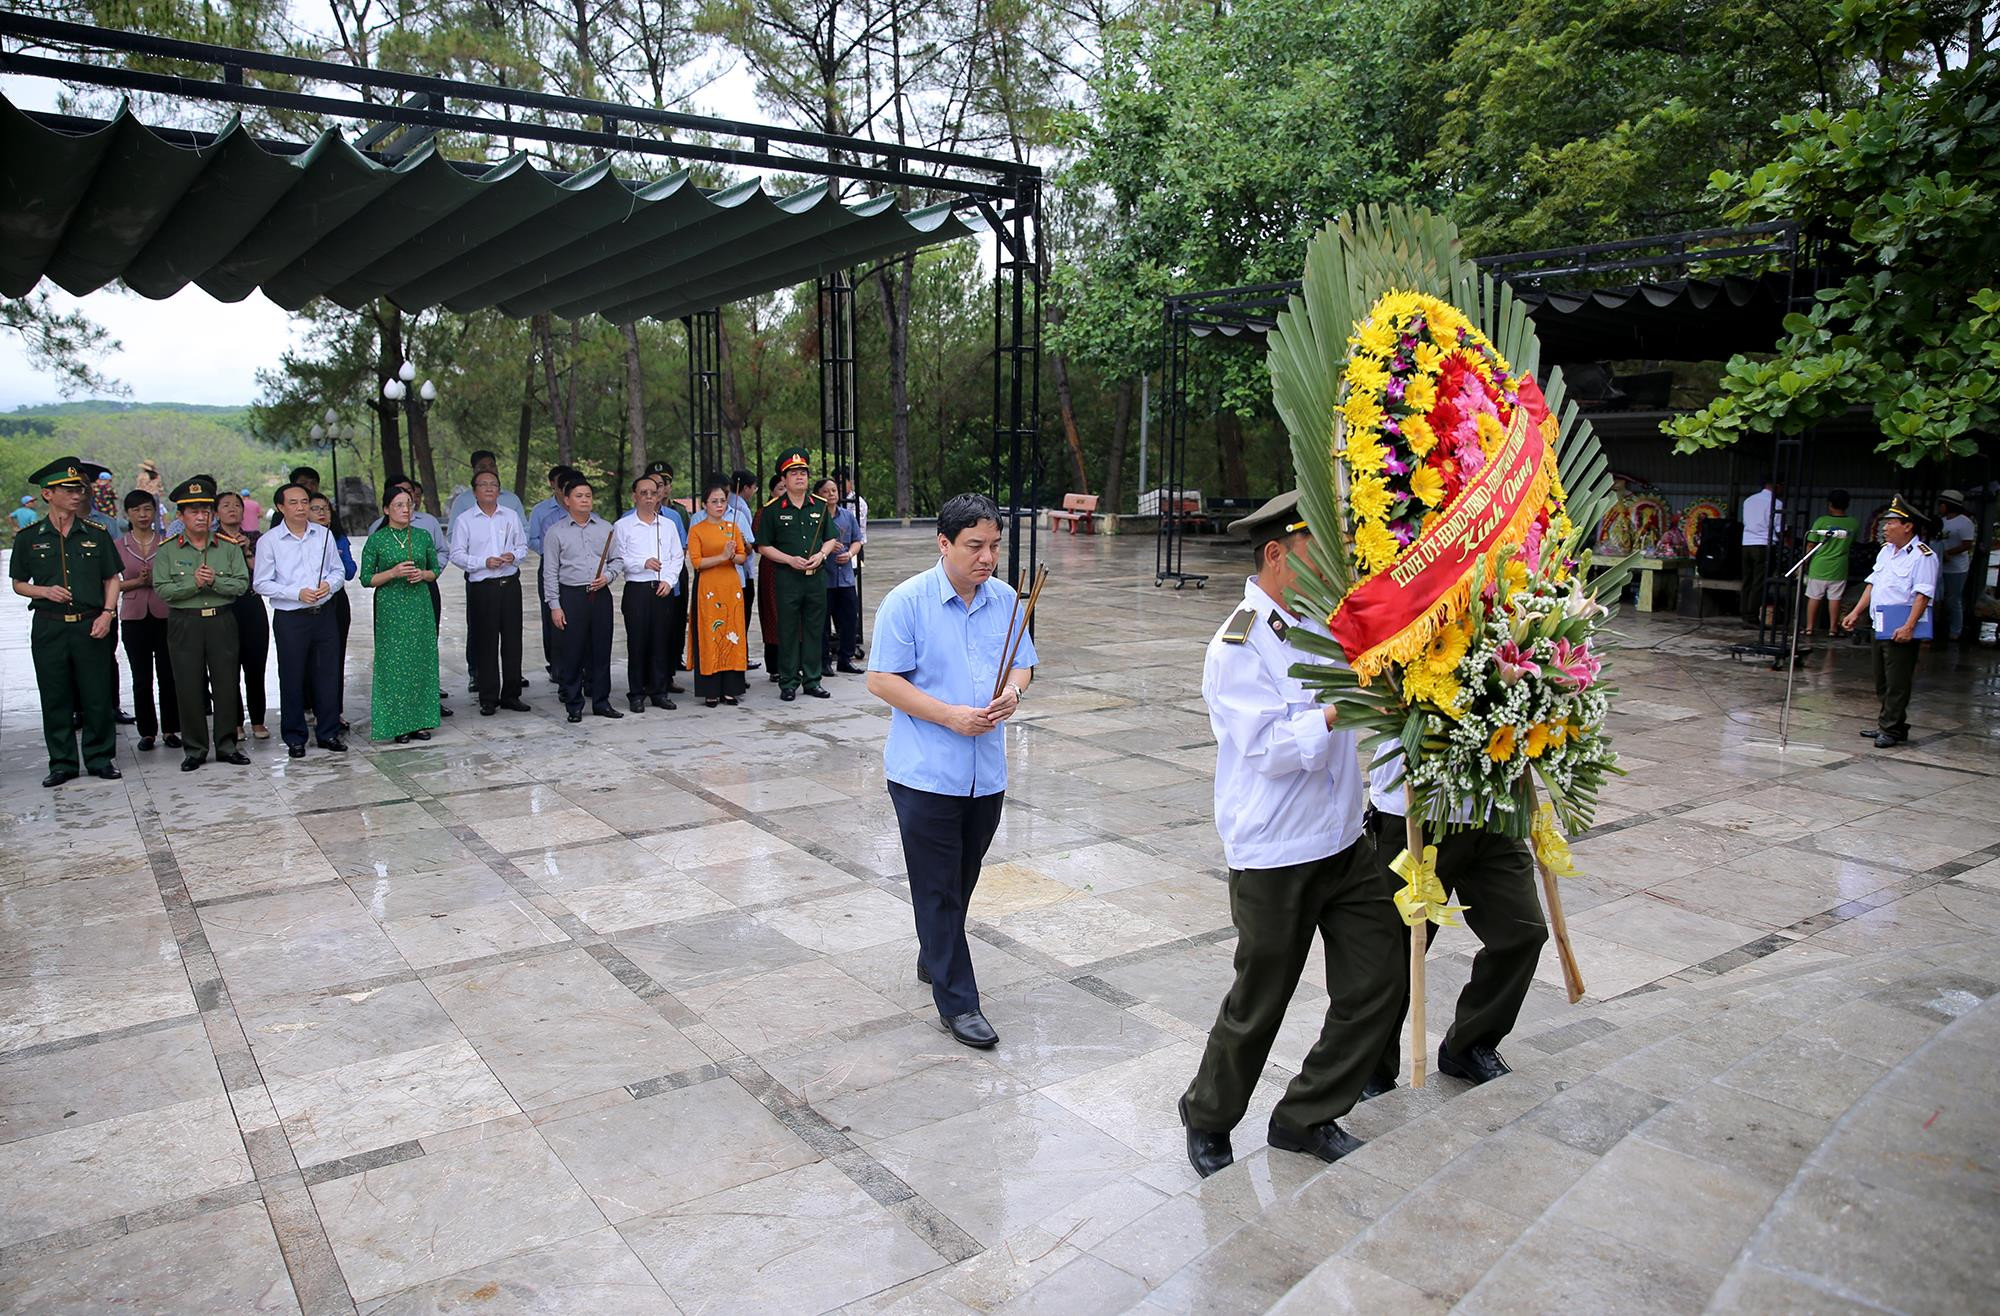 Đoàn đại biểu dâng hoa tại Đài tưởng niệm 10263 liệt sỹ ở Nghĩa Trang quốc gia Trường Sơn. Ảnh: Đức Anh